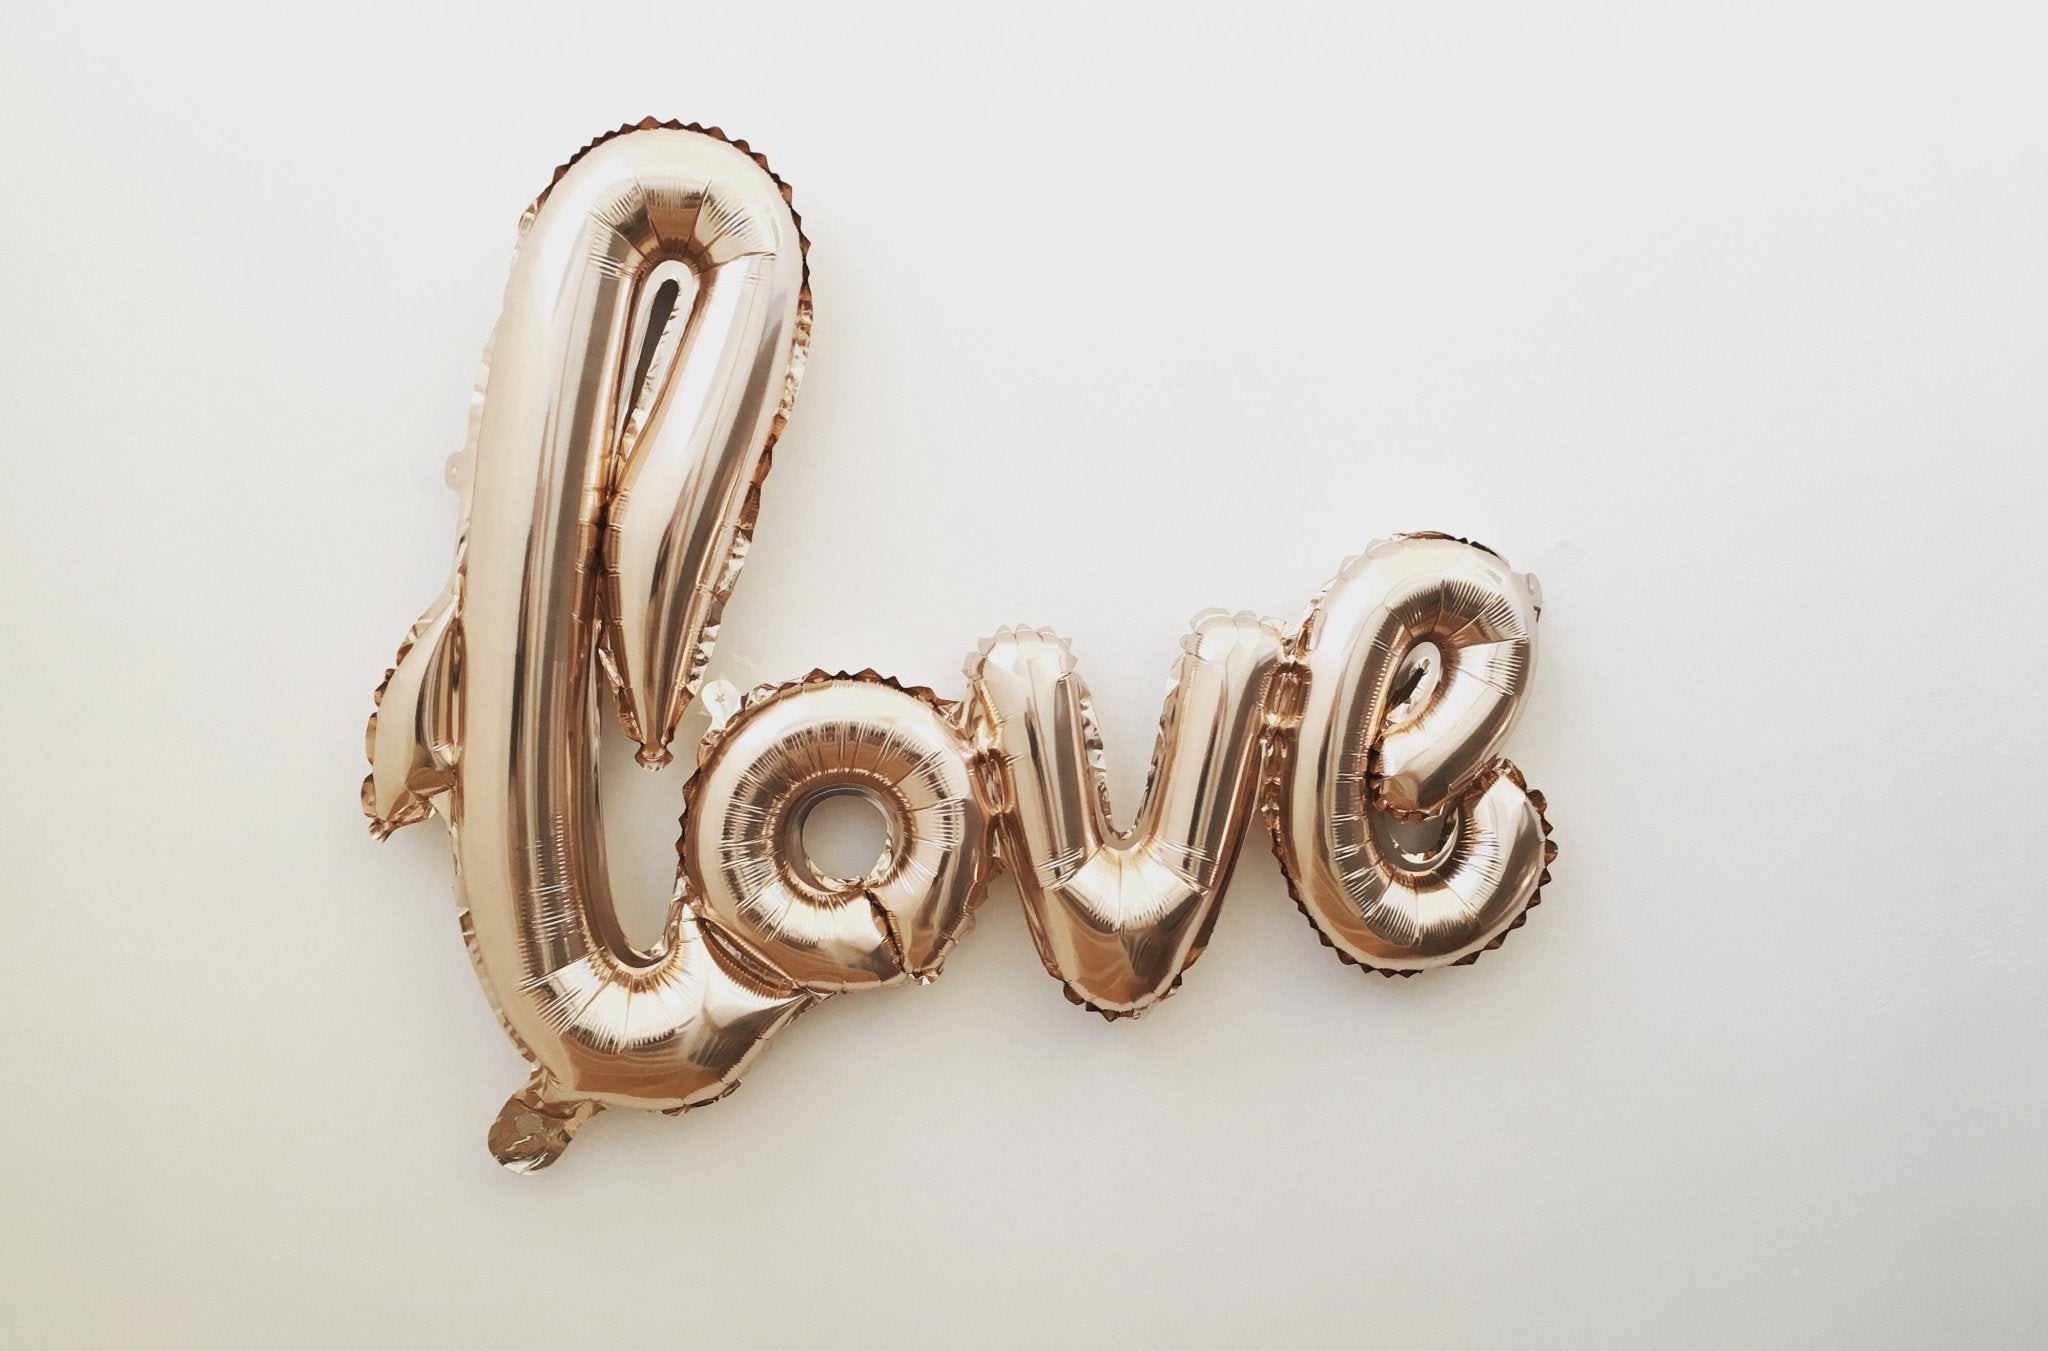 Crea un ambiente romántico con globos decorativos este San Valentín - Mis Globos